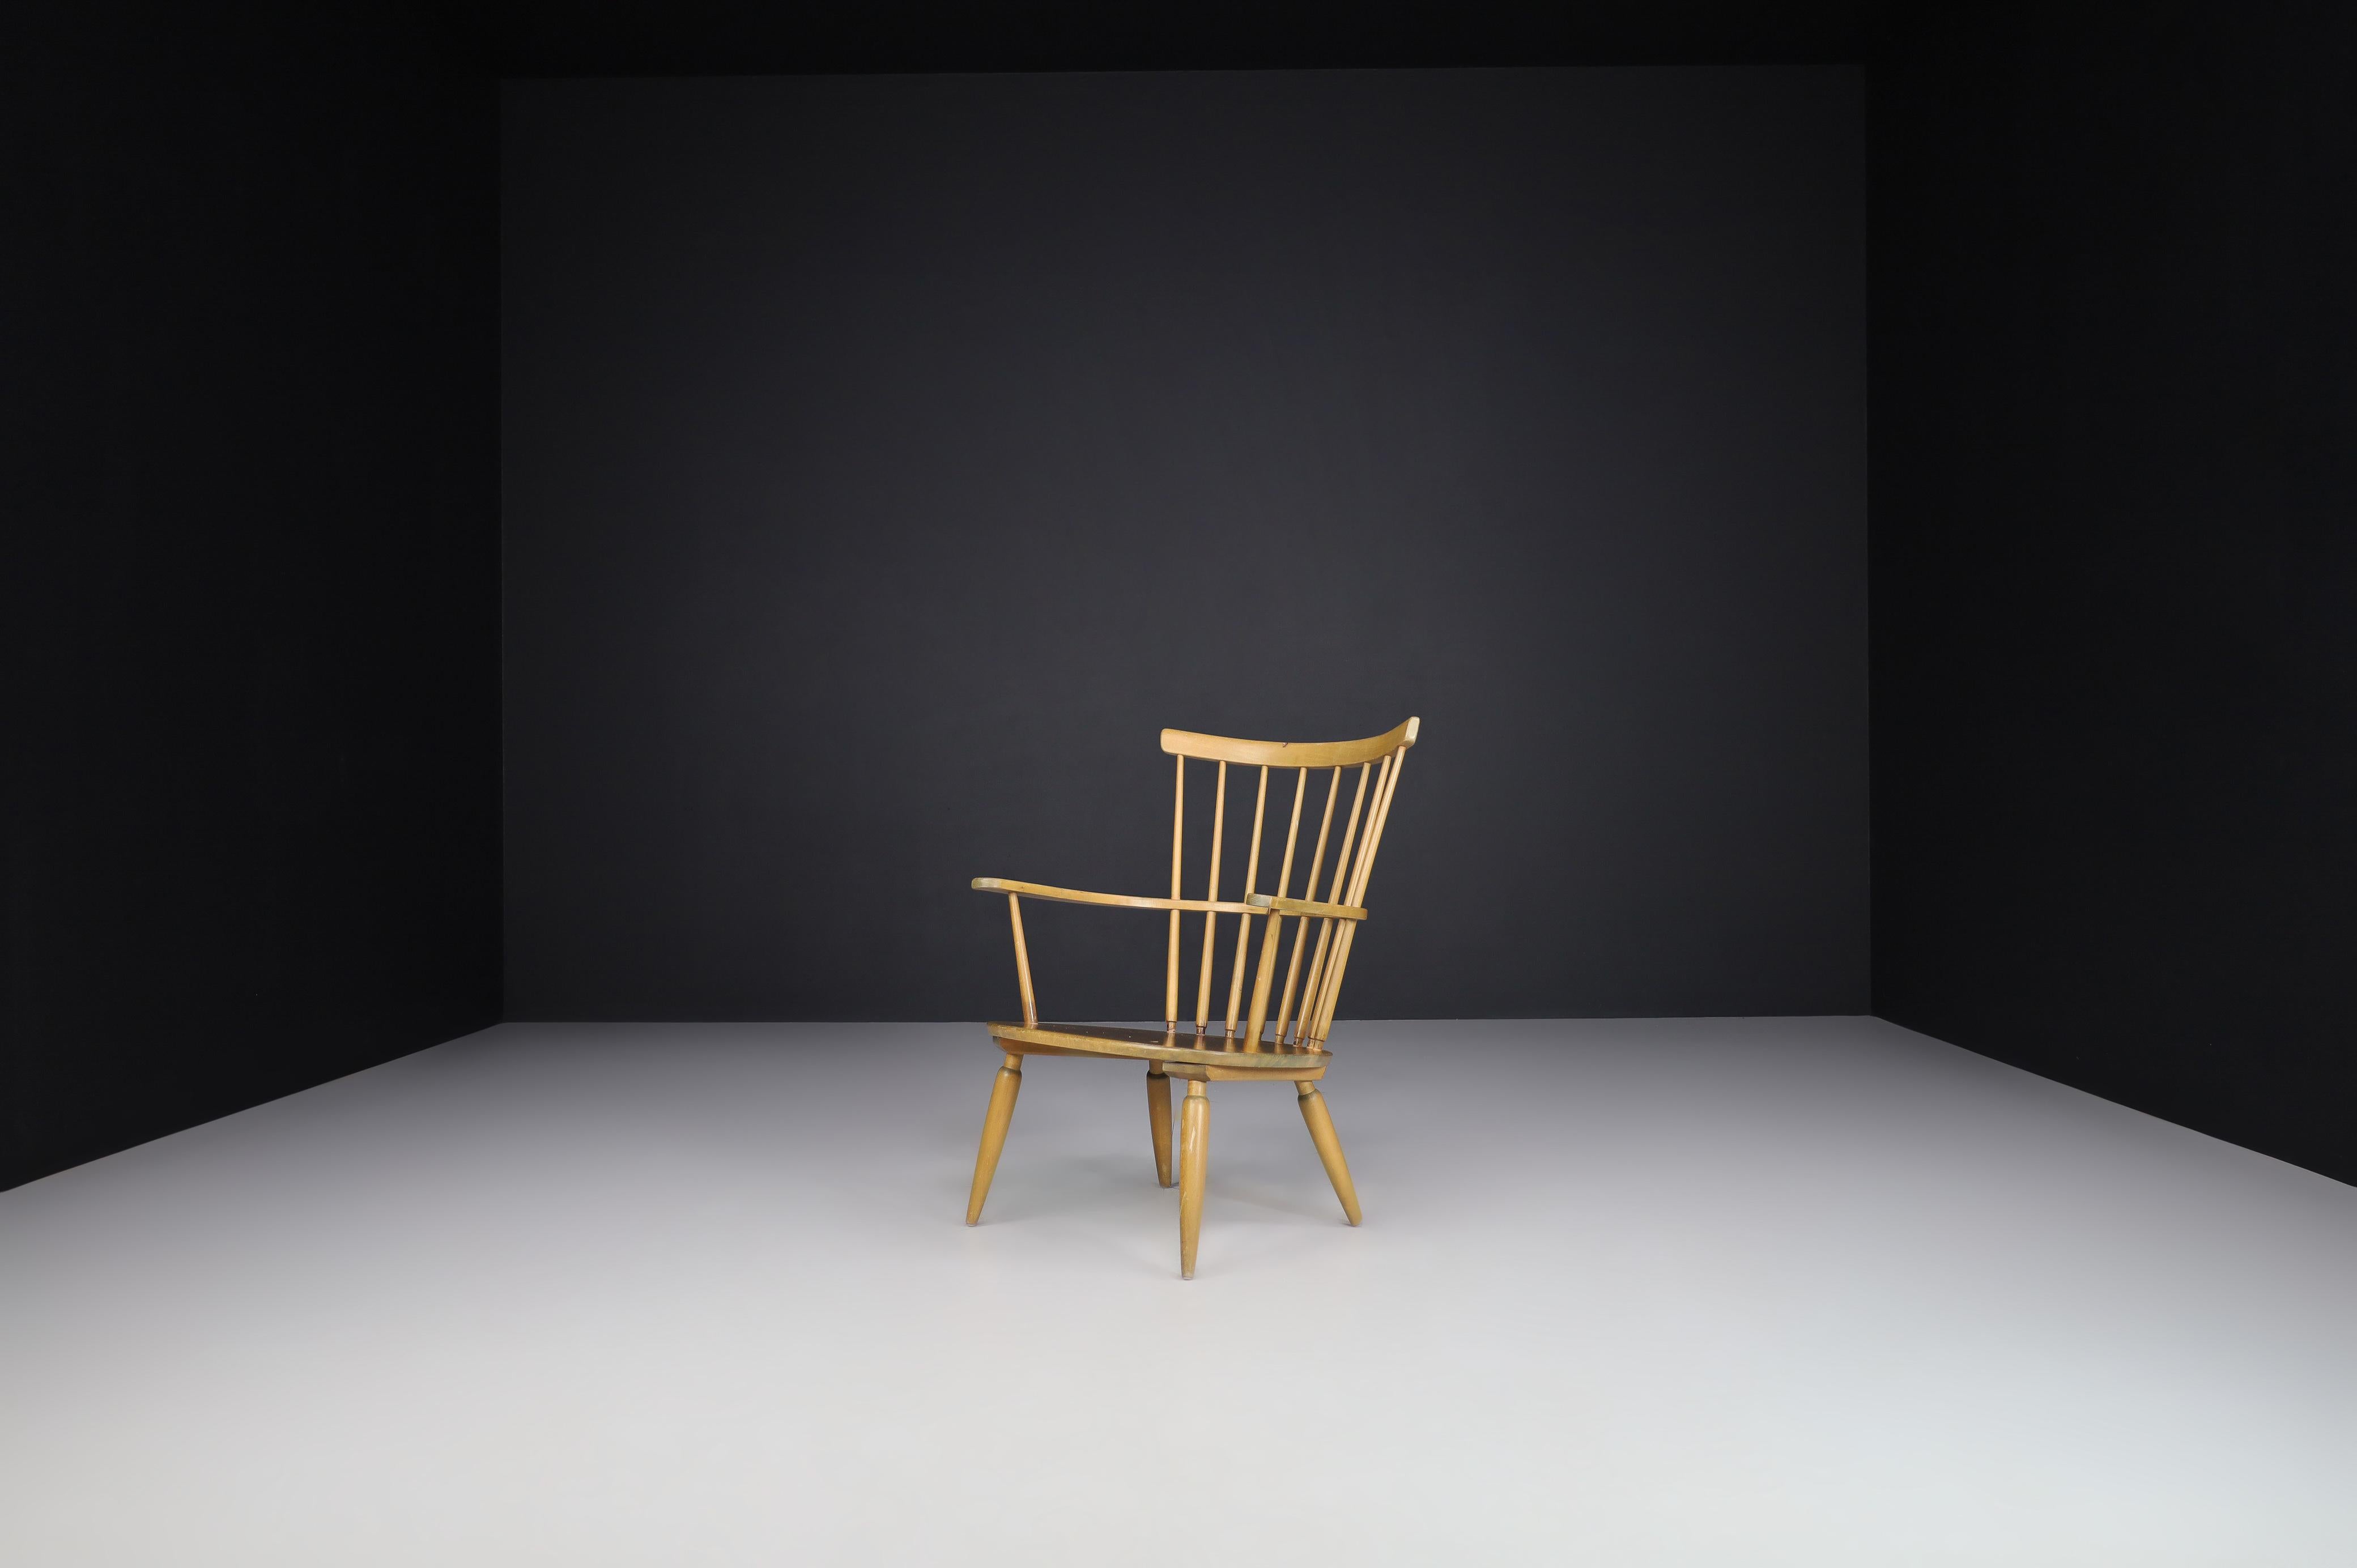 Sessel aus der Jahrhundertmitte von Franz Schuster, Österreich, 1950er Jahre.

Dieser österreichische Sessel ist aus Buchenholz gefertigt und wurde von Franz Schuster entworfen und in den 1950er Jahren in Österreich hergestellt. Die typischen